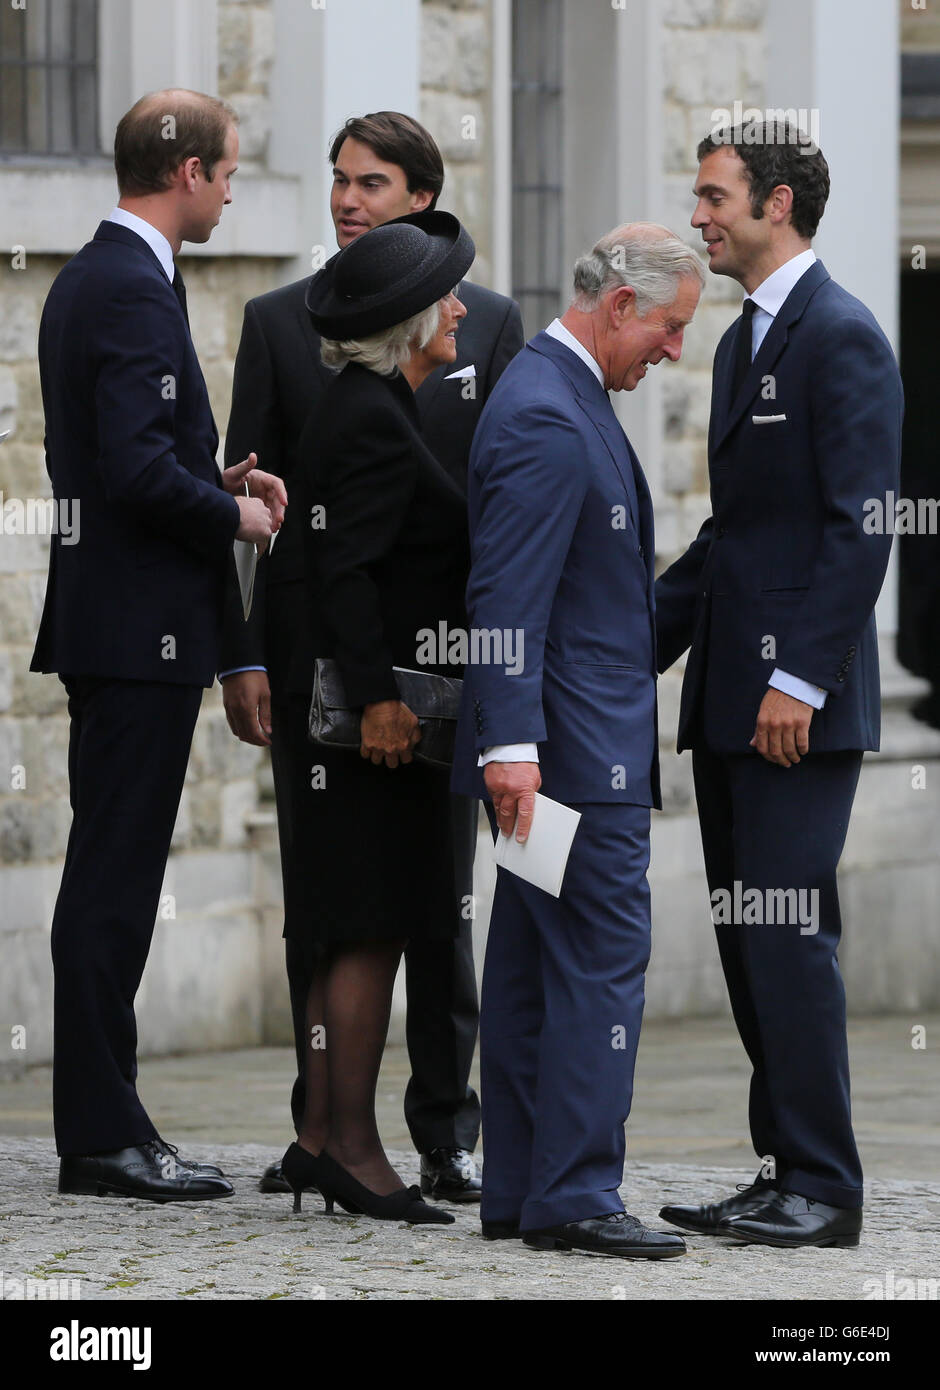 Le prince de Galles, accompagné de la duchesse de Cornwall et du duc de Cambridge, salue Hugh van Cutsem (à droite) avec son frère William (au milieu) après les funérailles de leur père Hugh van Cutsem à la cathédrale Saint Mary et Sainte Helen de Brentwood, Essex. Banque D'Images